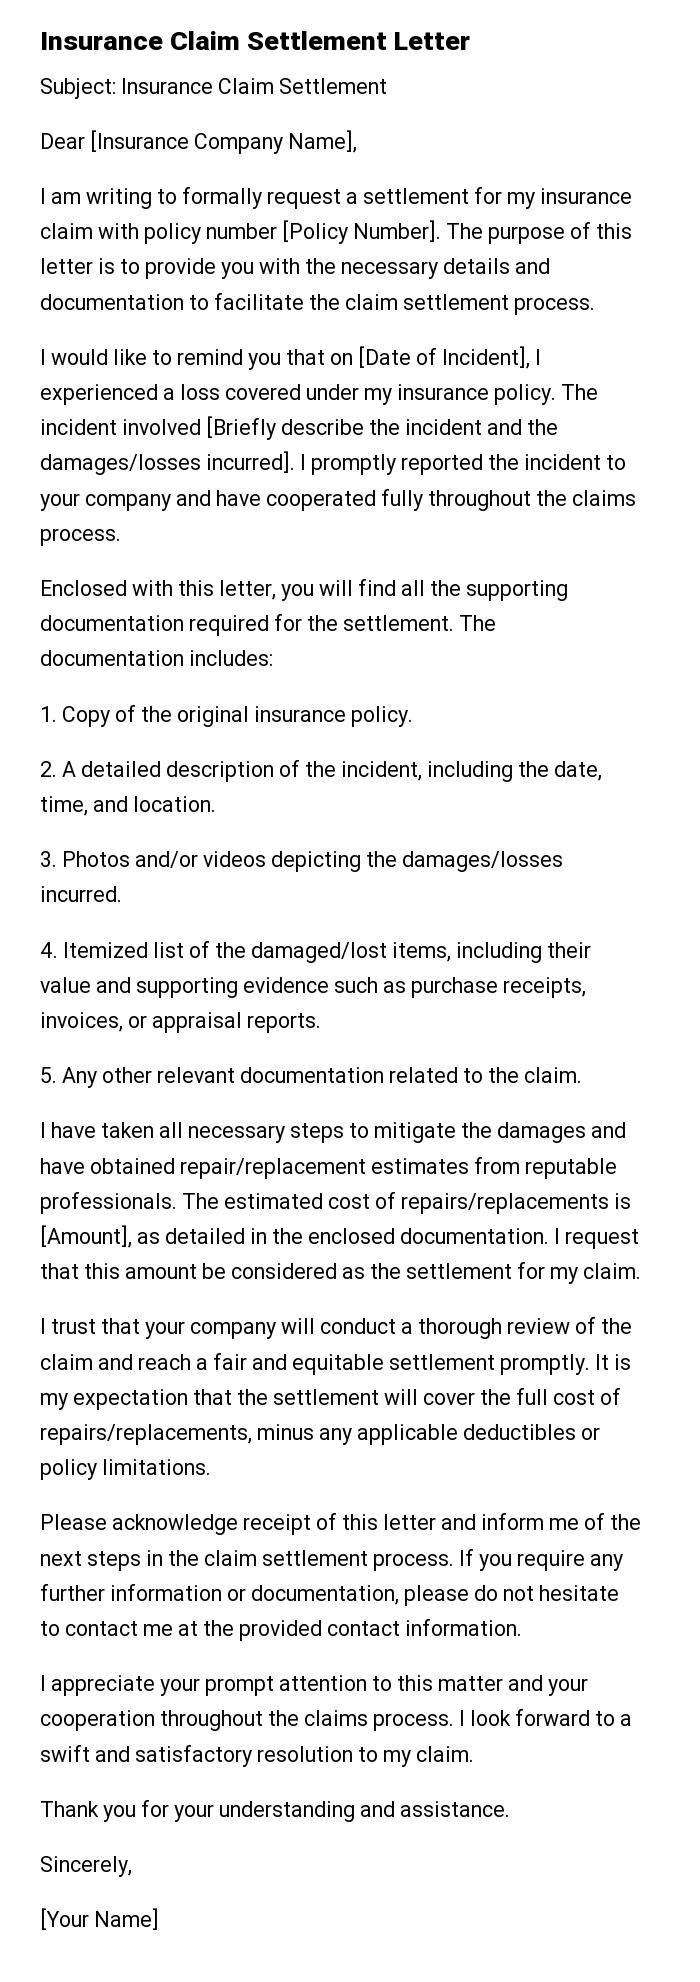 Insurance Claim Settlement Letter